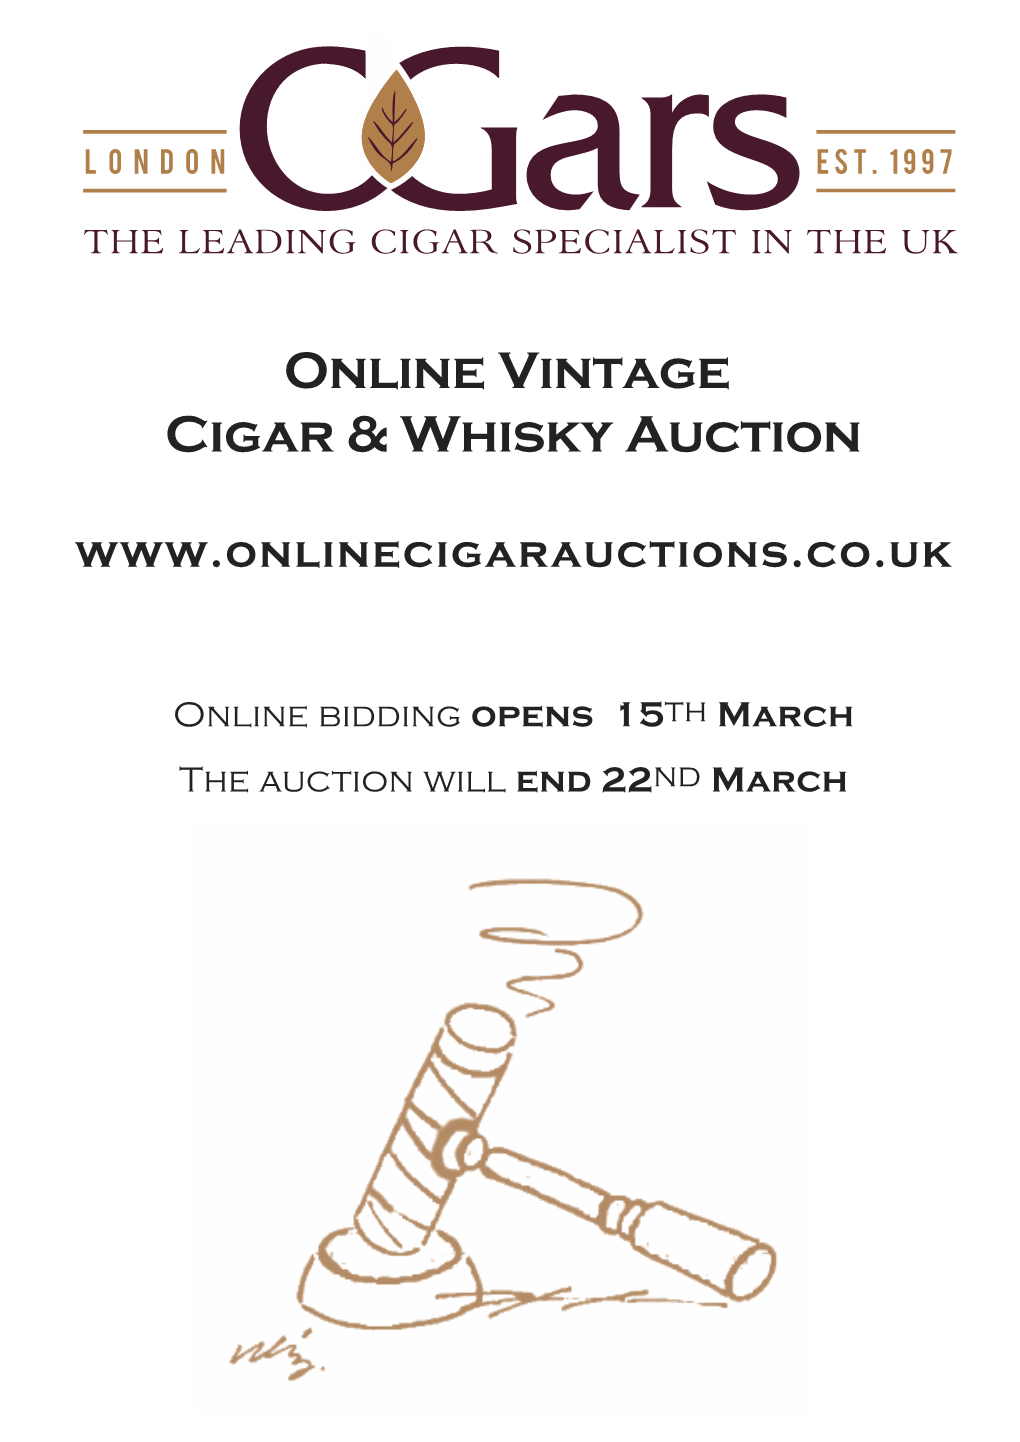 Online Vintage Cigar & Whisky Auction